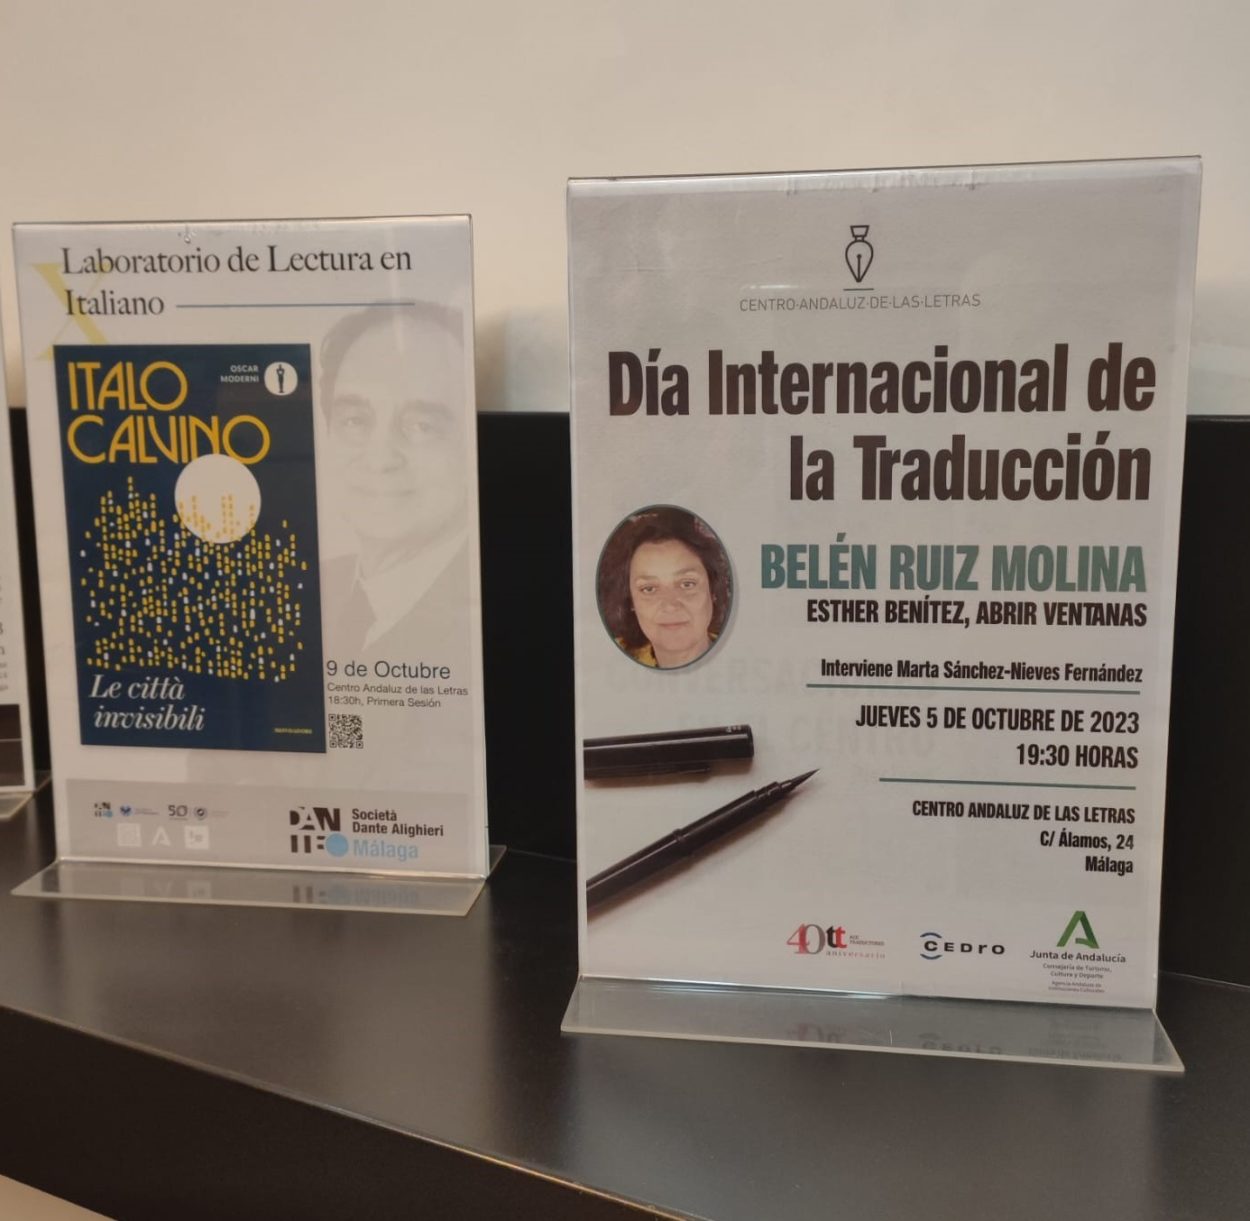 Foto de los carteles del Laboratorio de Lectura en Italiano y del Día Internacional de la Traducción.